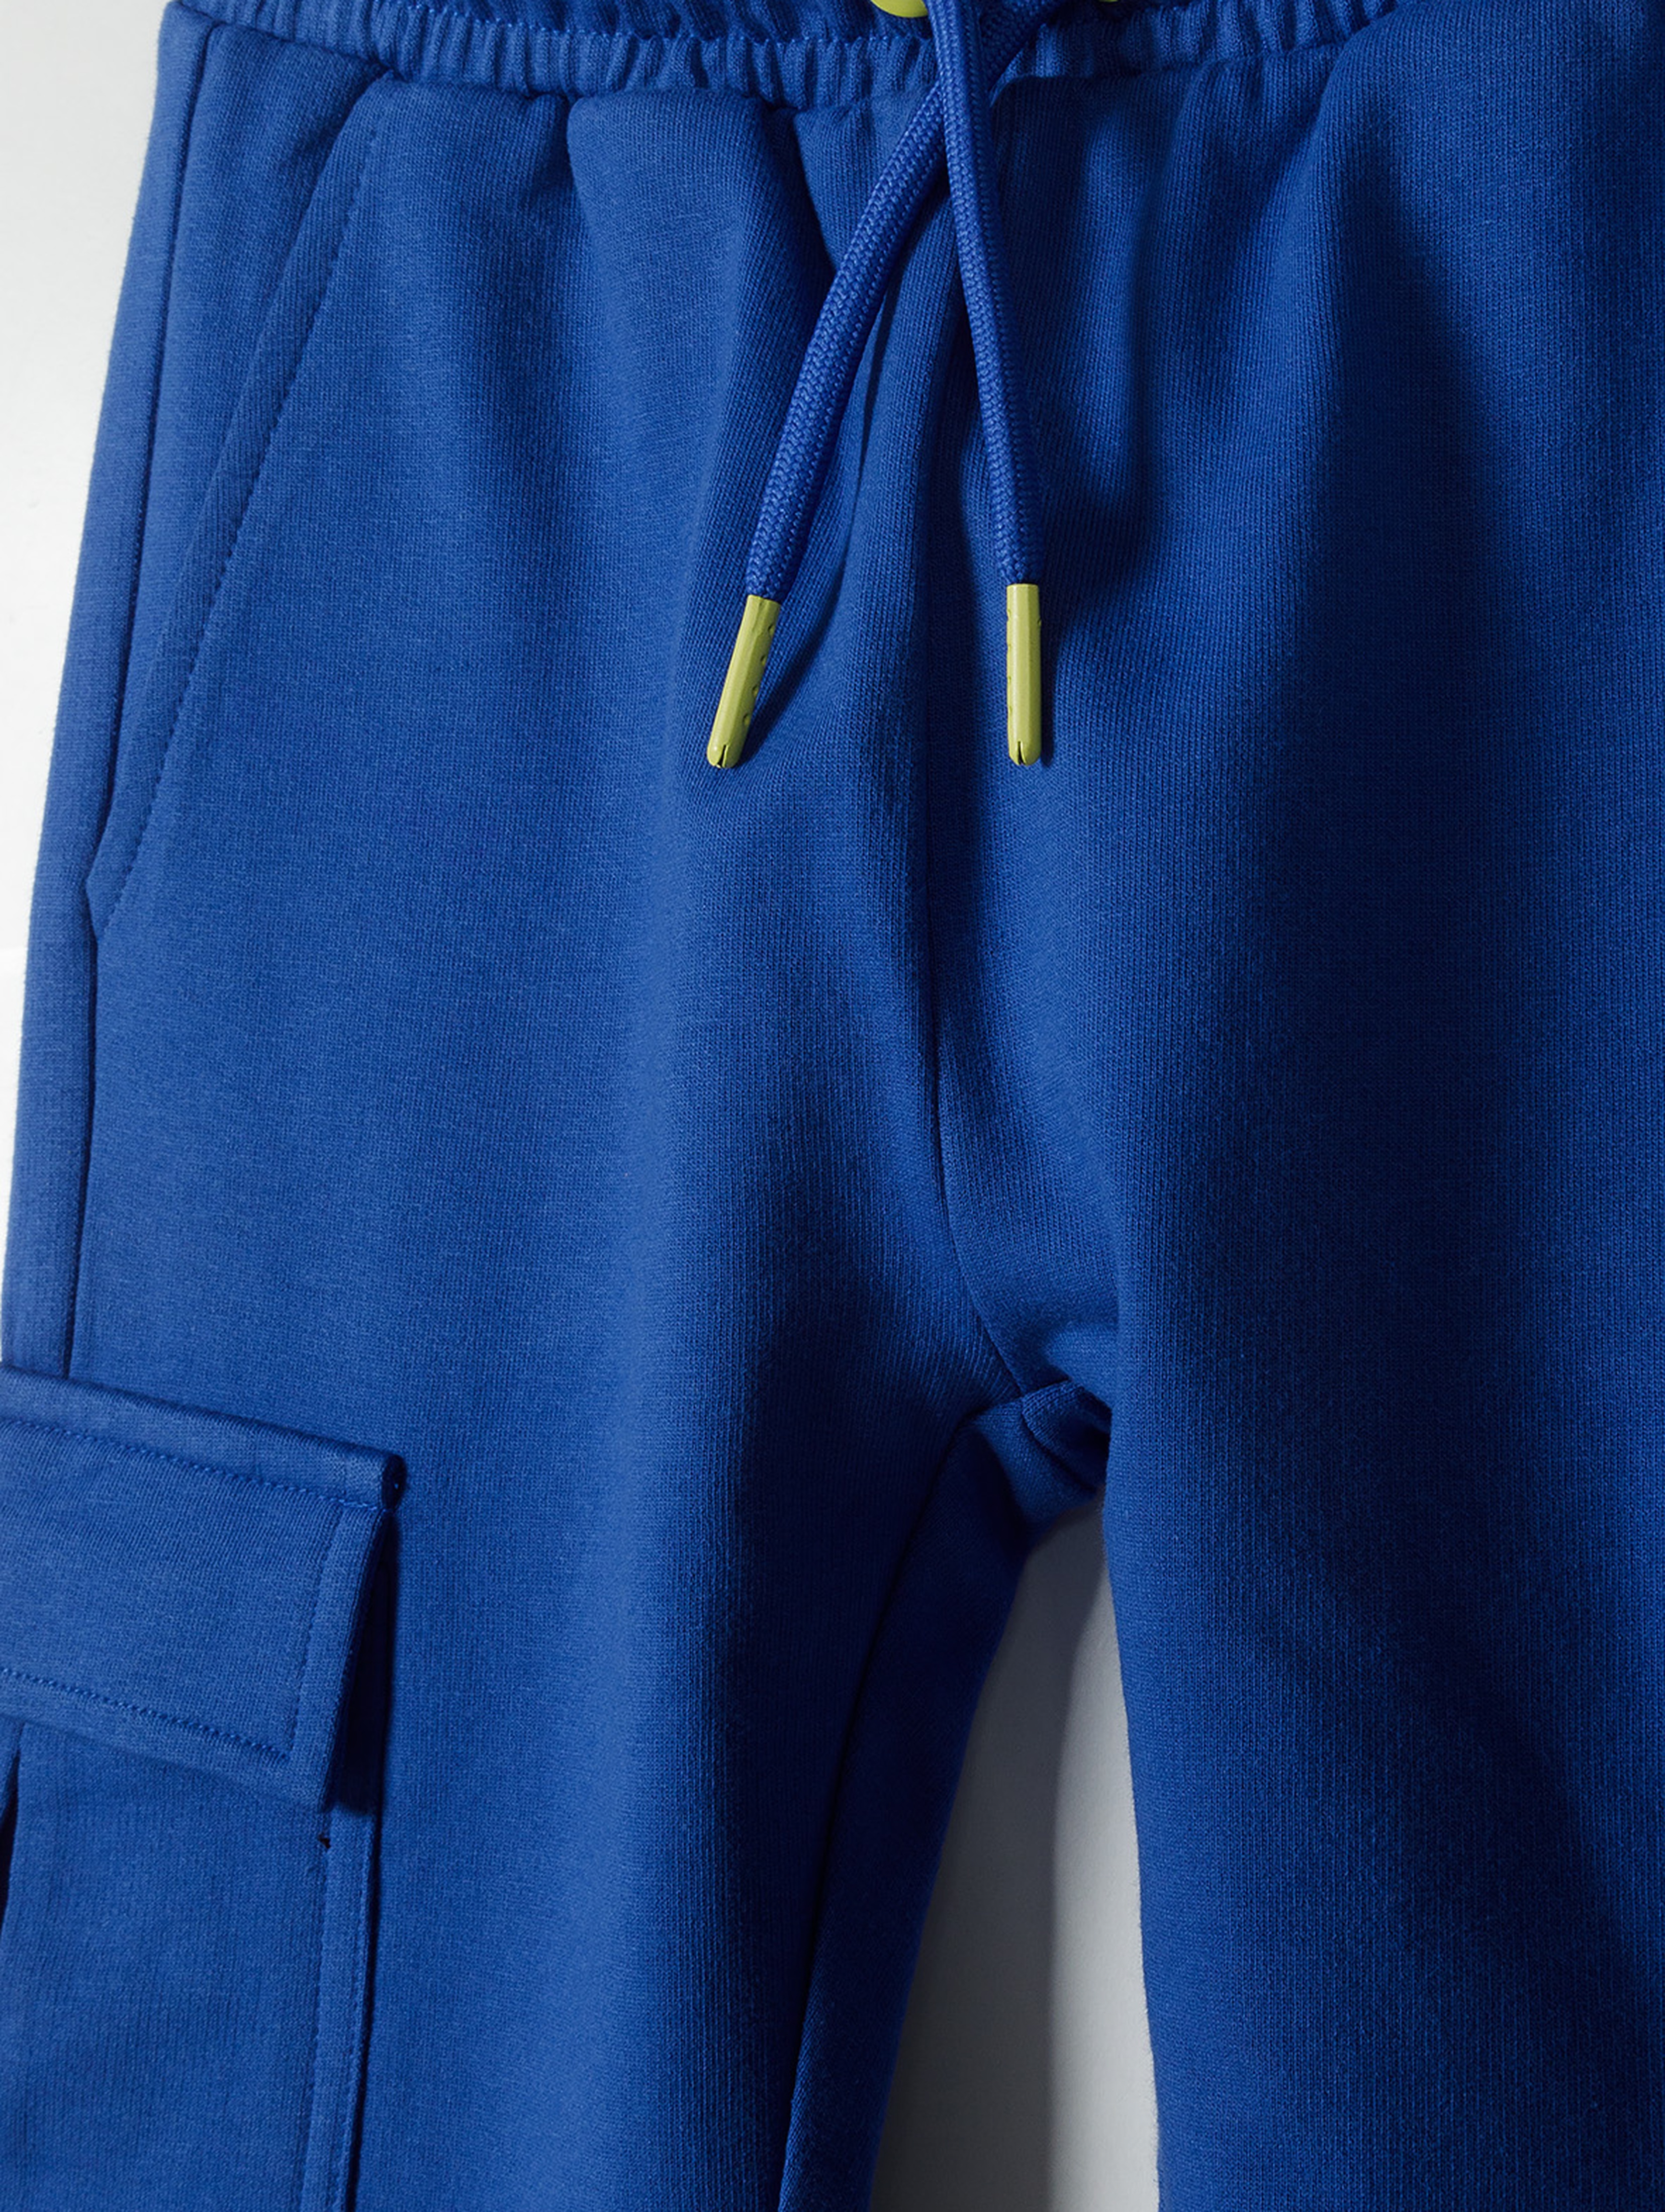 Dresowe spodnie bojówki dla chłopca - niebieskie - 5.10.15.